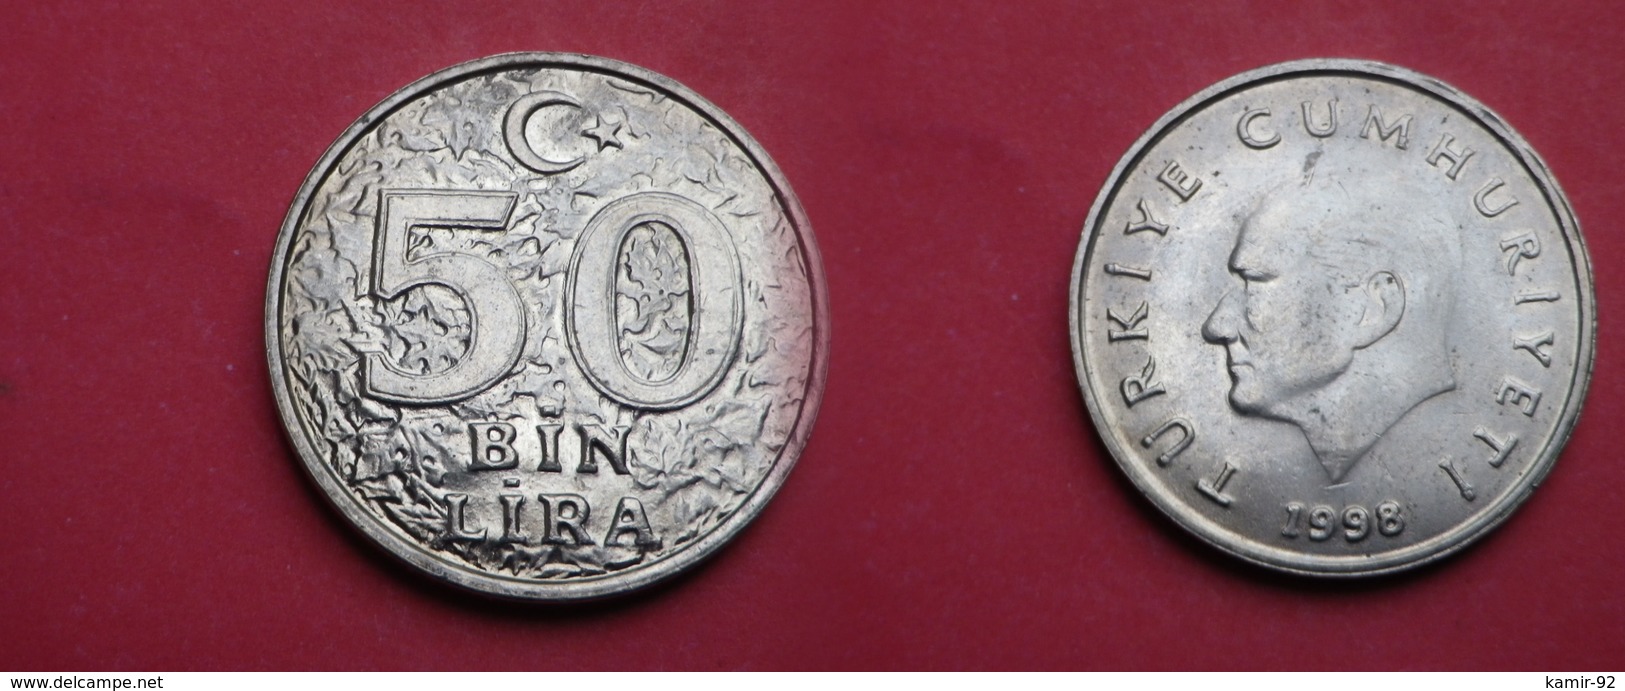 Turquie 50 000 Lira      (50bin Lira ) 1998  Km# 1056   UNC SUP - Turquie